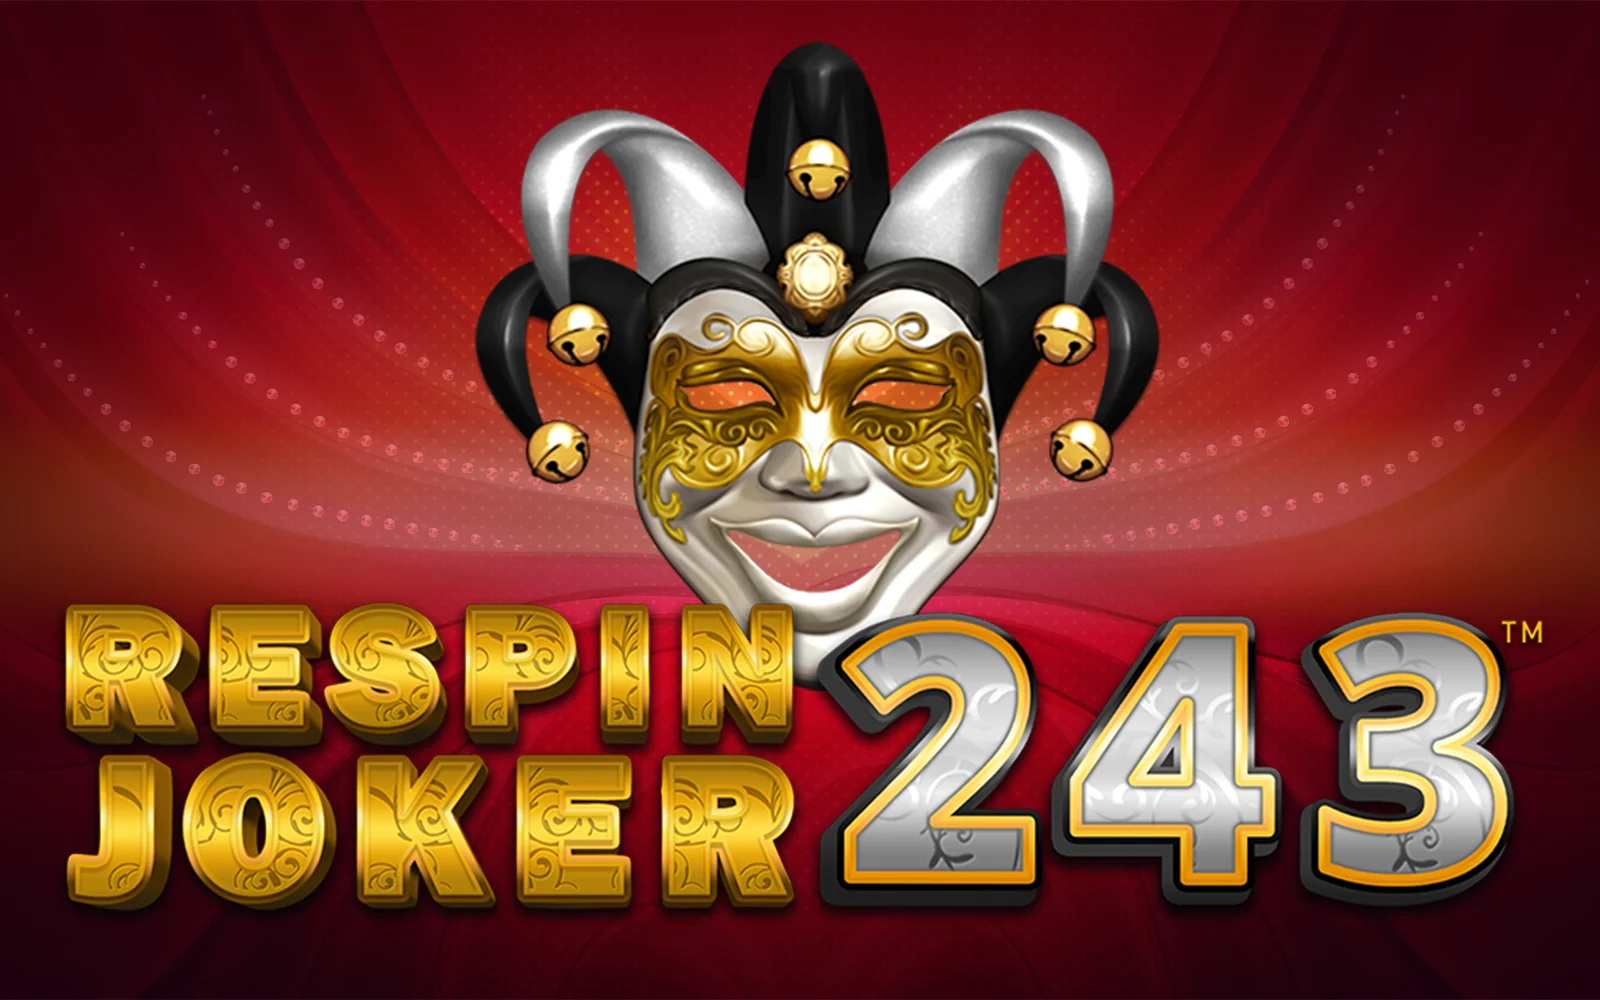 Gioca a Respin Joker 243 sul casino online Starcasino.be